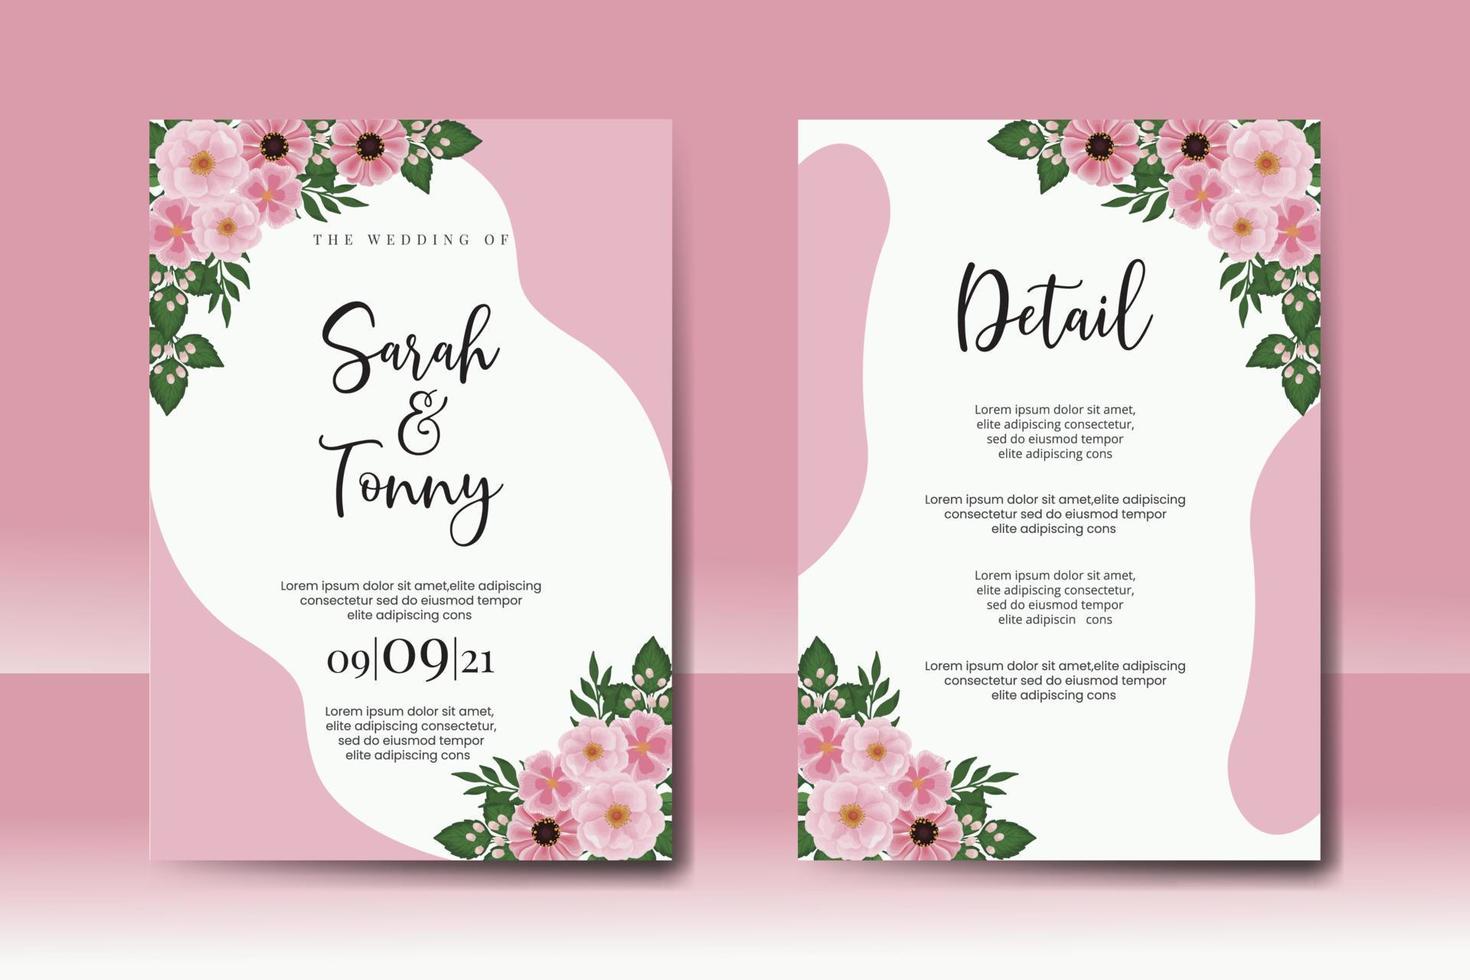 Boda invitación marco colocar, floral acuarela digital mano dibujado zinnia y peonía flor diseño invitación tarjeta modelo vector